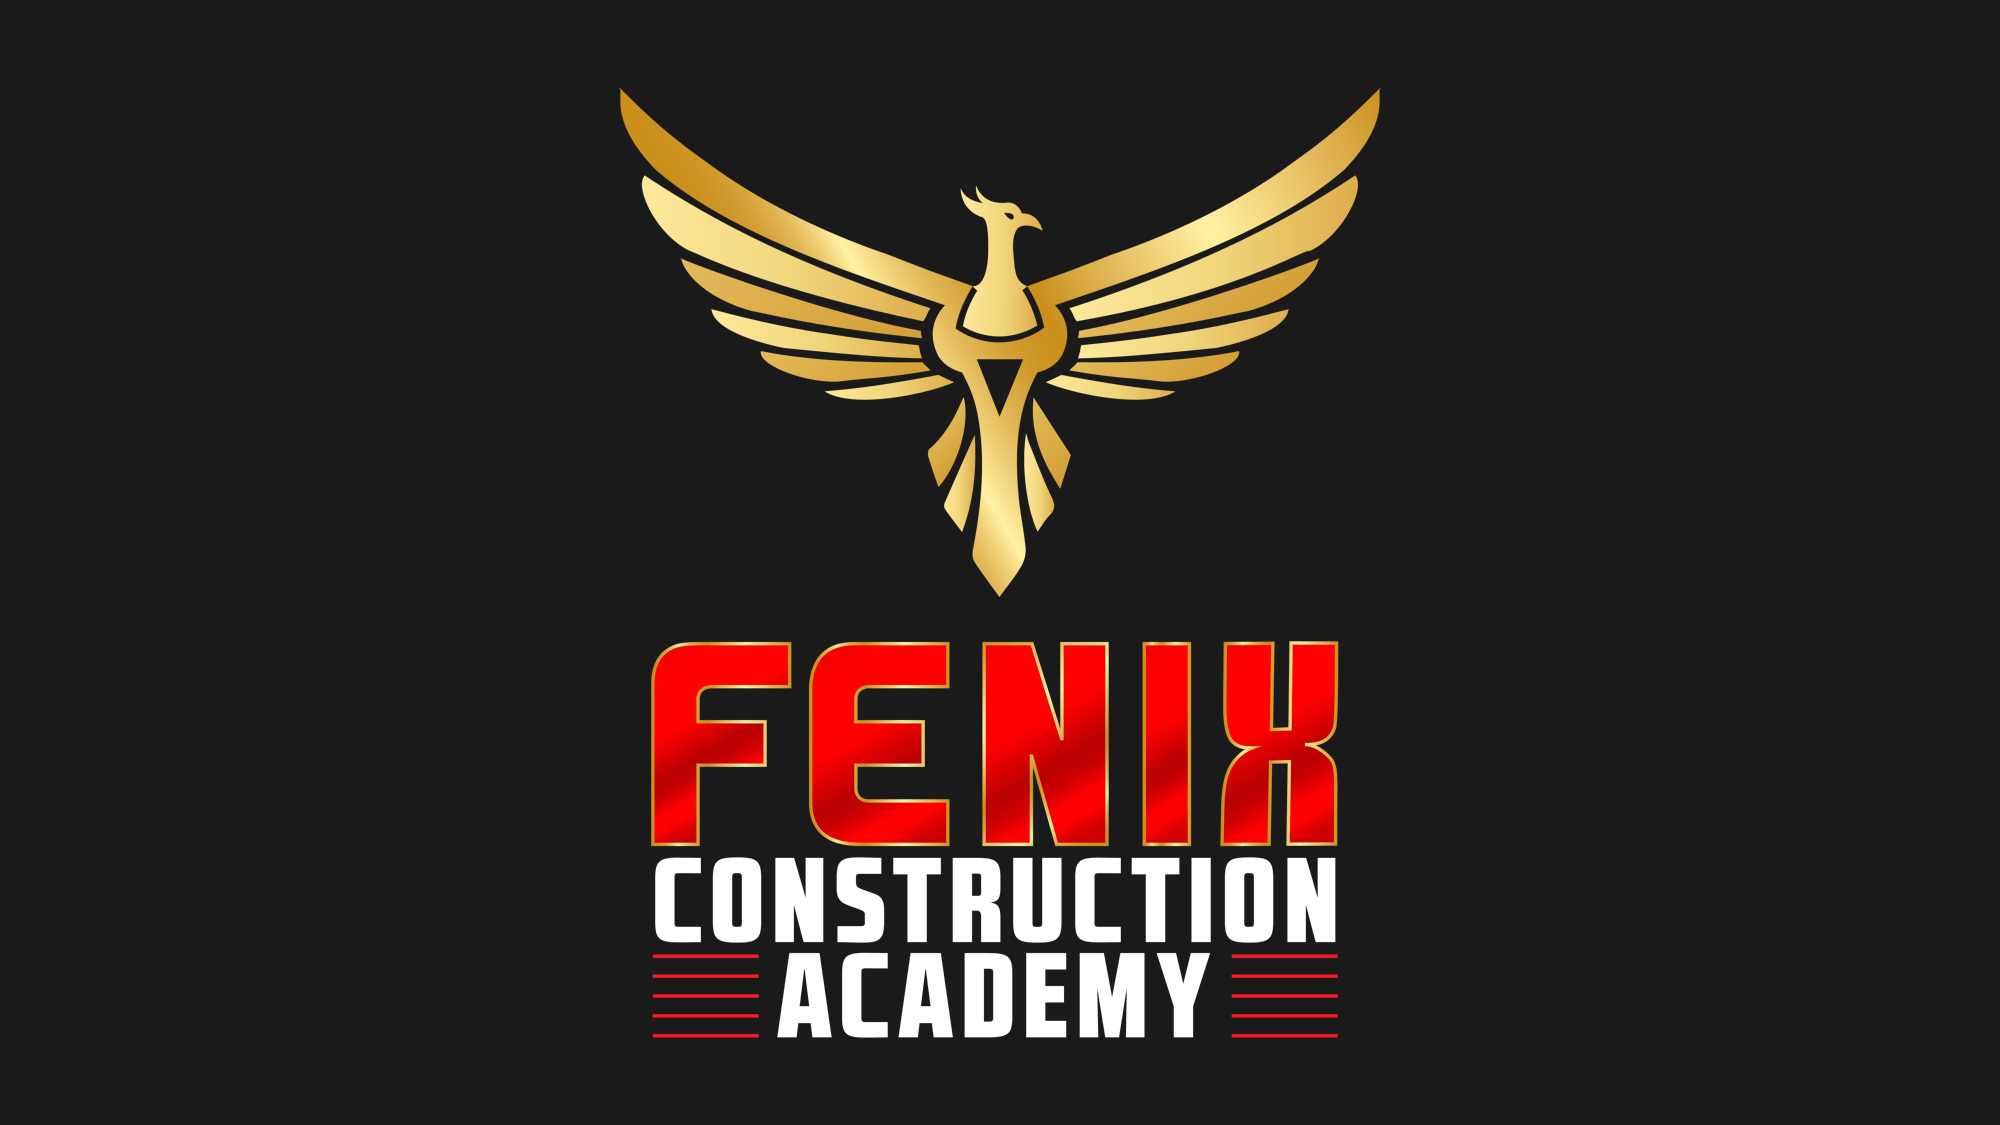 Diseño del logo de Fenix Academy